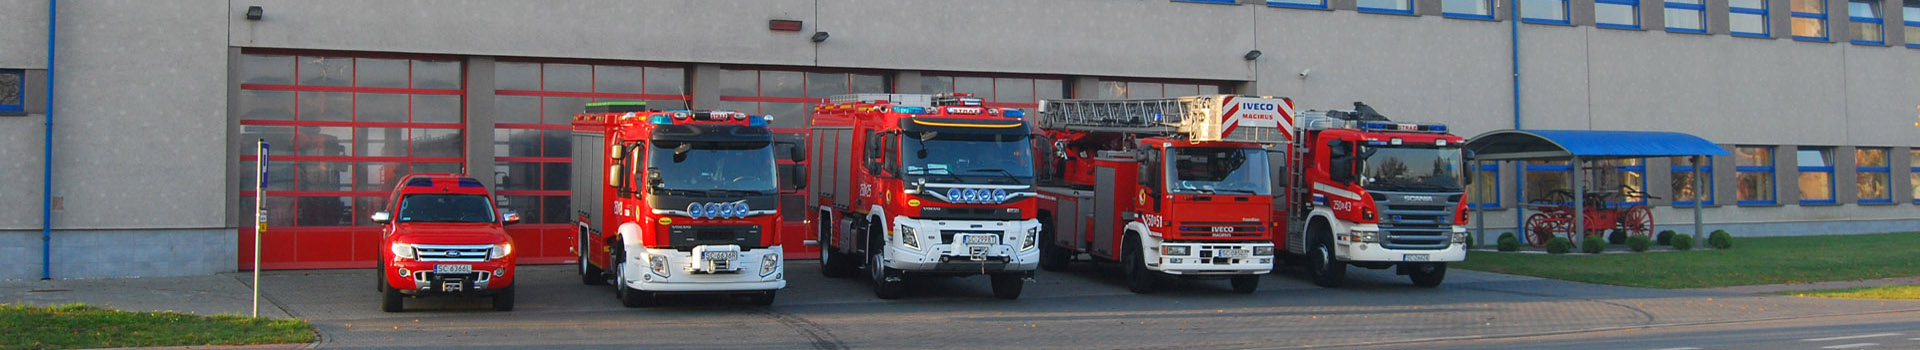 Baner - Szkolna Jednostka Ratowniczo-Gaśnicza - samochody pożarnicze na tle bram wyjazdowych Szkolnej JRG